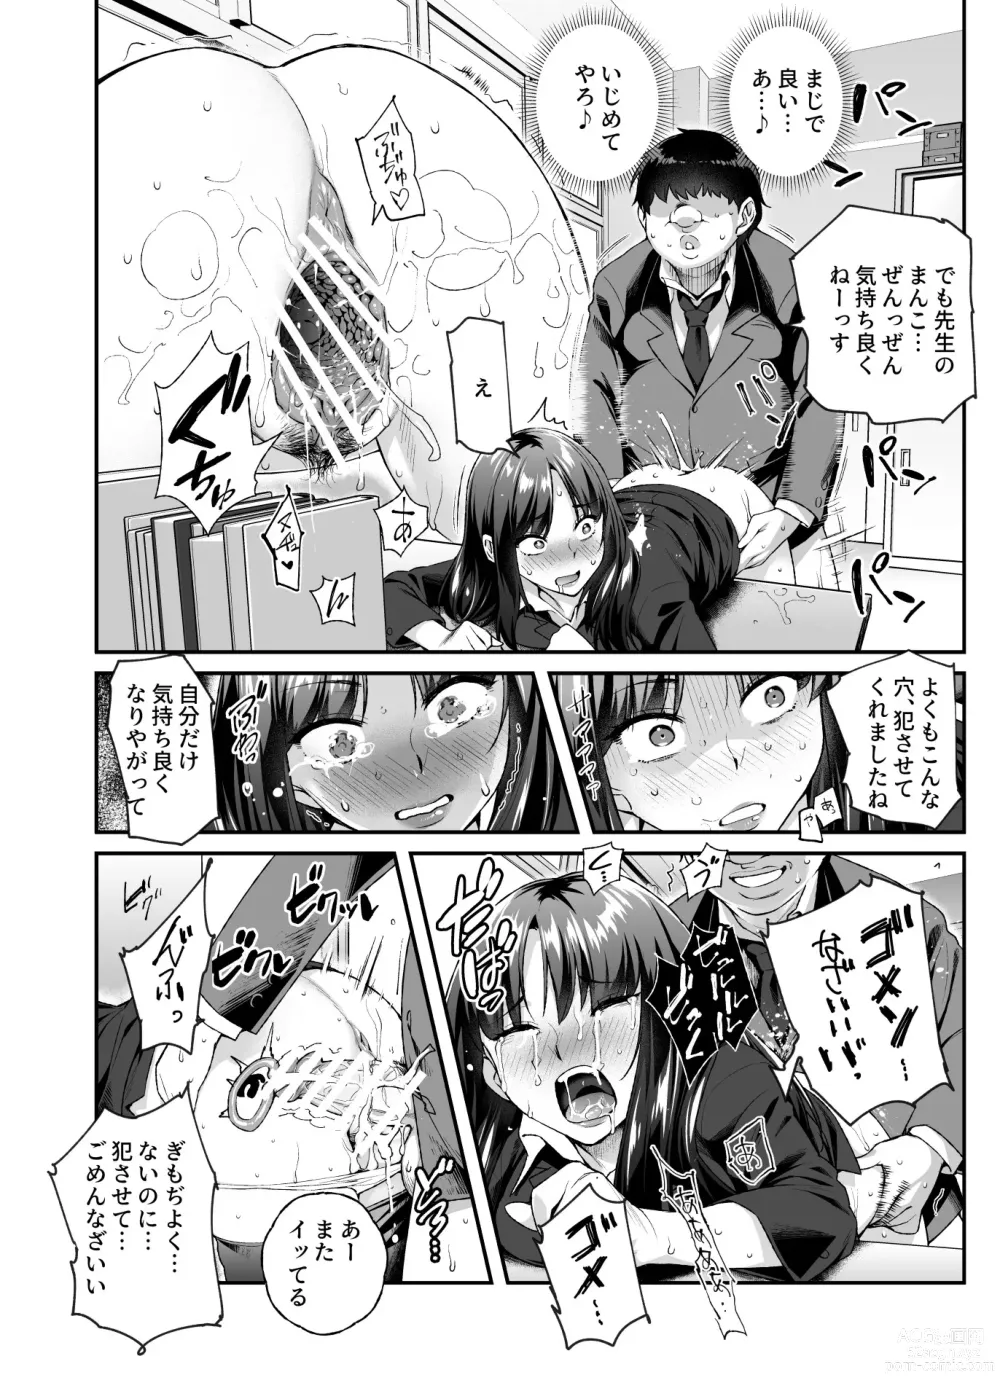 Page 31 of doujinshi Ore de Shojohaka Sureba Shiawase ninaruto Bazzutte EX